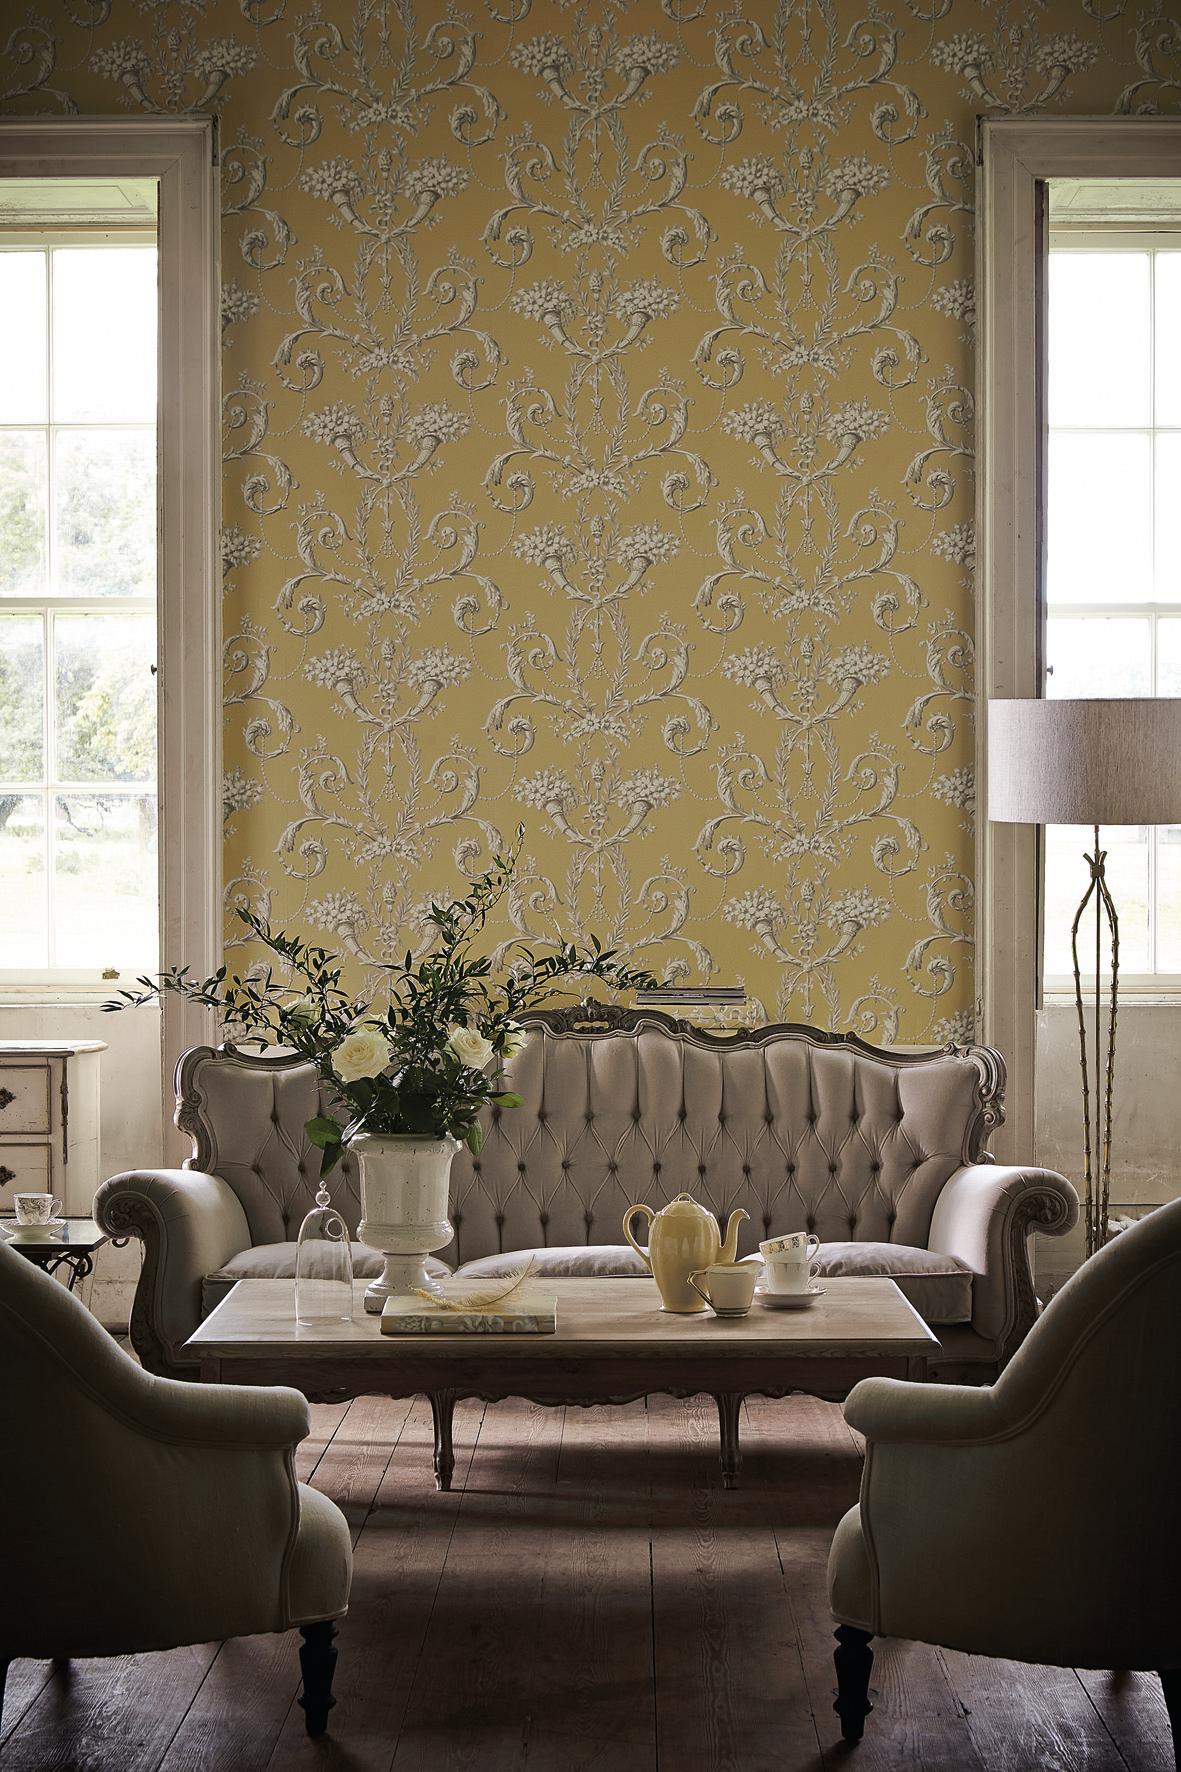 Gemusterte Tapete im klassischen Wohnzimmer #wandgestaltung #designwand #barockmöbel ©Little Greene